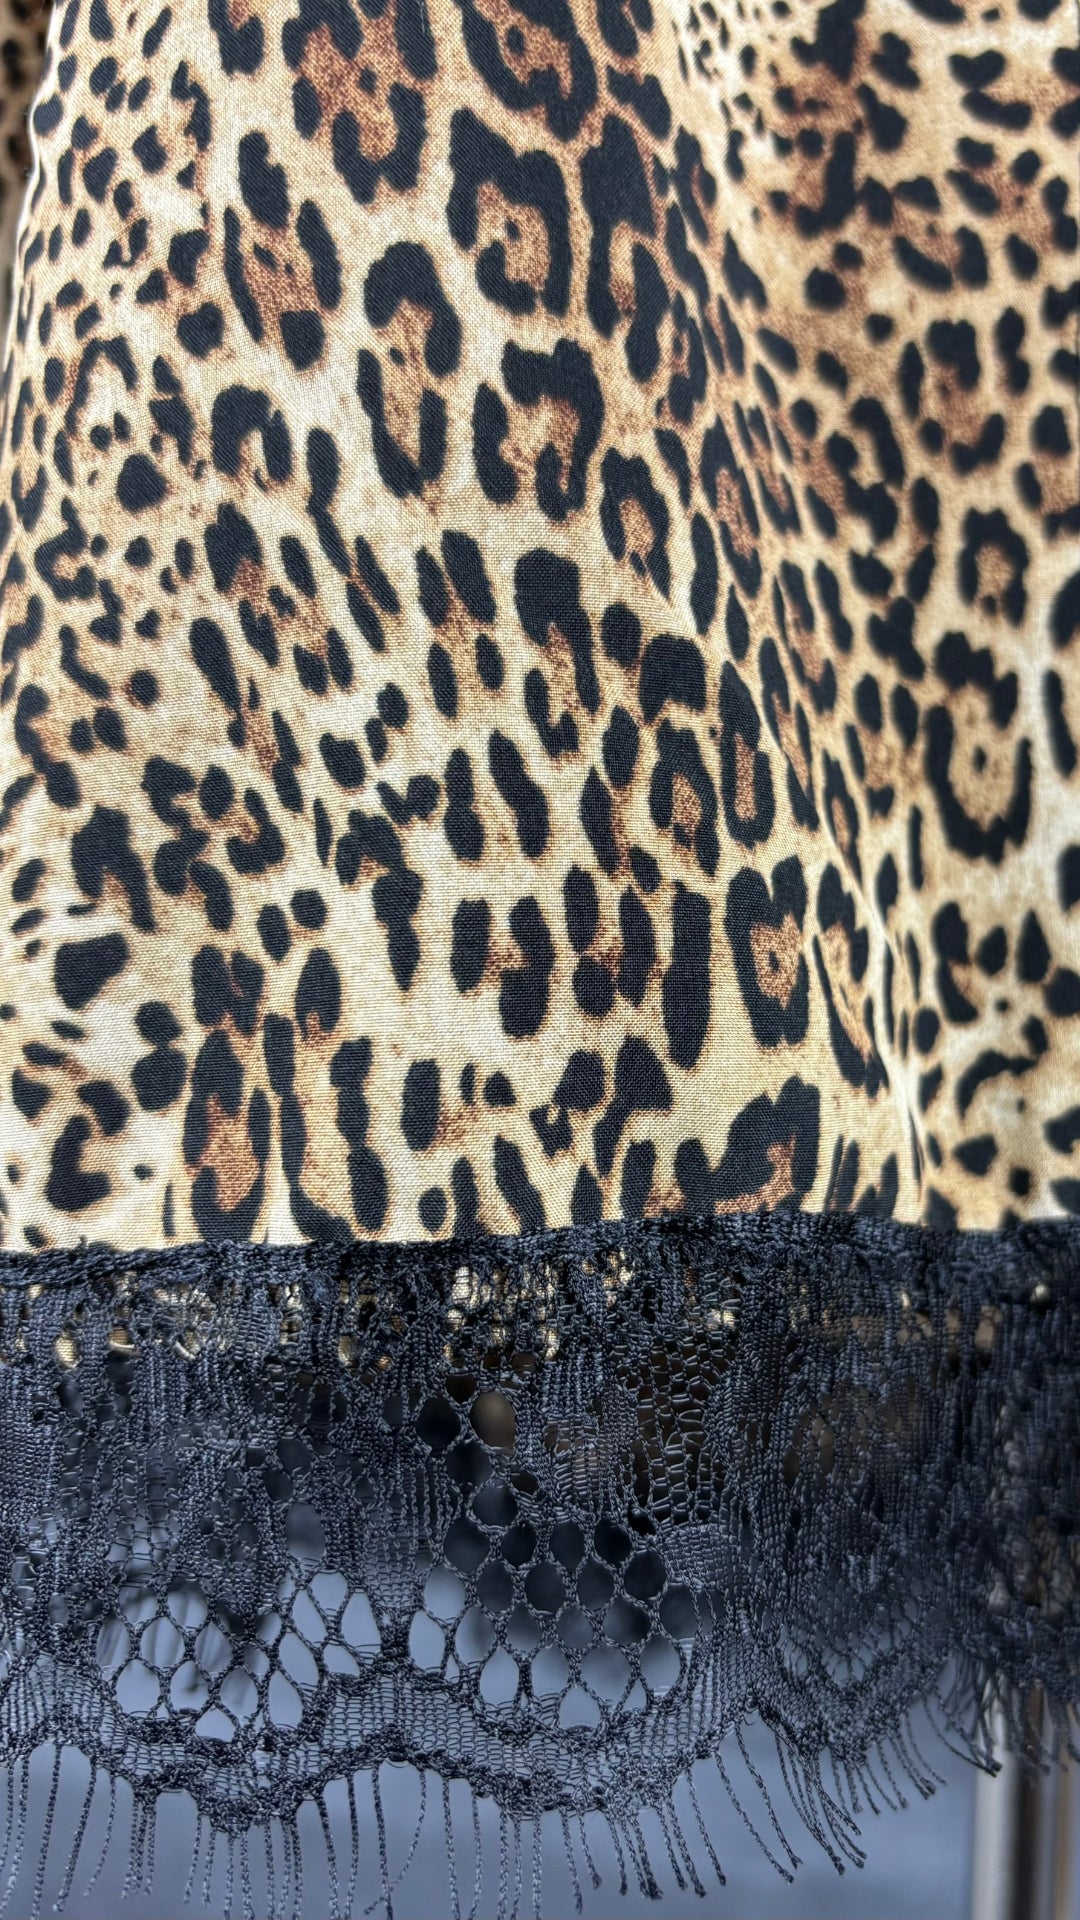 Chemisier fluide léopard ourlet en dentelle Uchuu Studio, taille m/l. Vue de près du tissu.